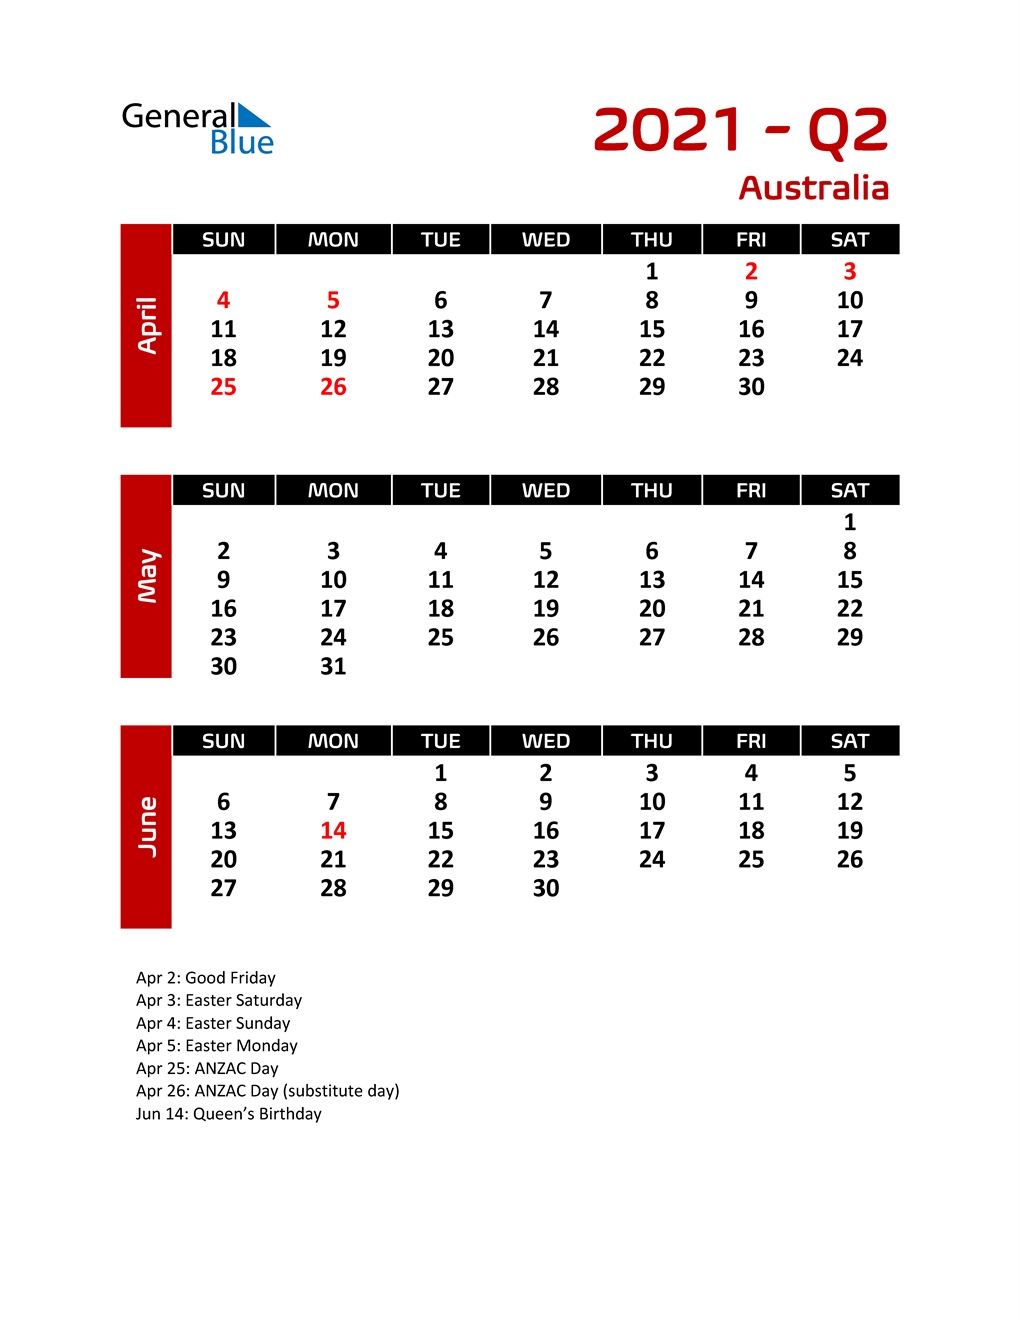 Q2 2021 Quarterly Calendar for Australia